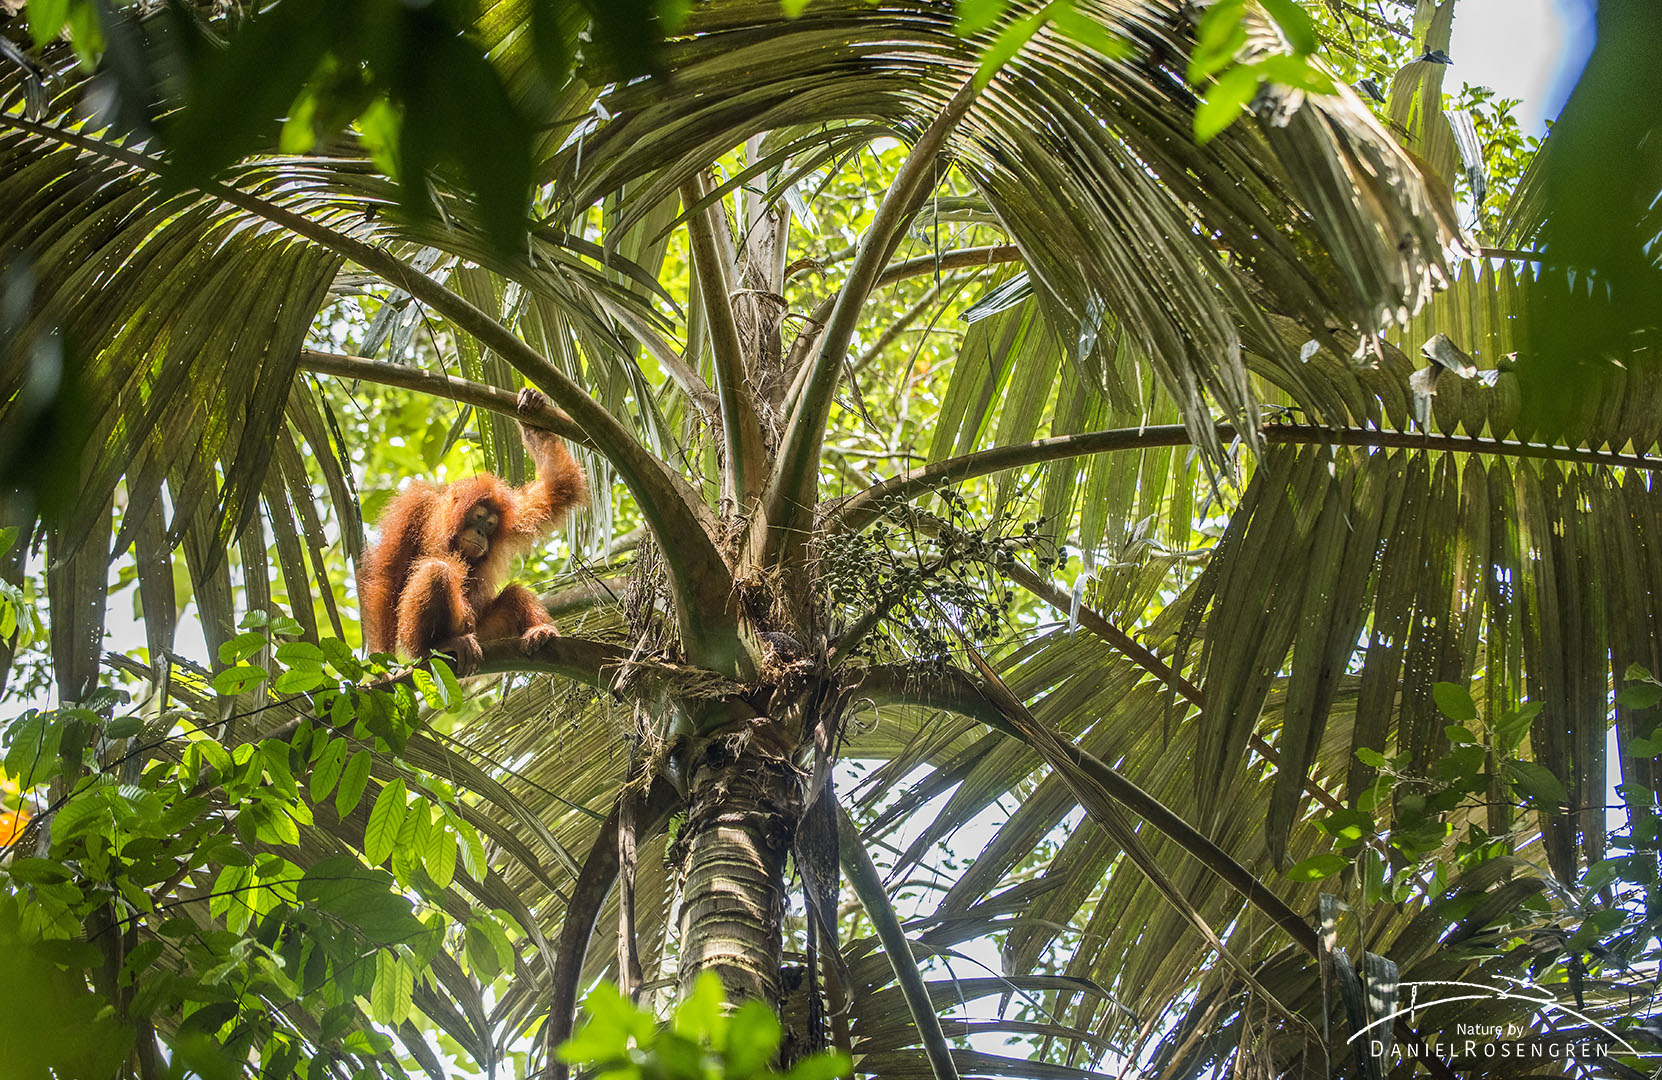 An Orang-utan in a palm tree on Sumatra. © Daniel Rosengren